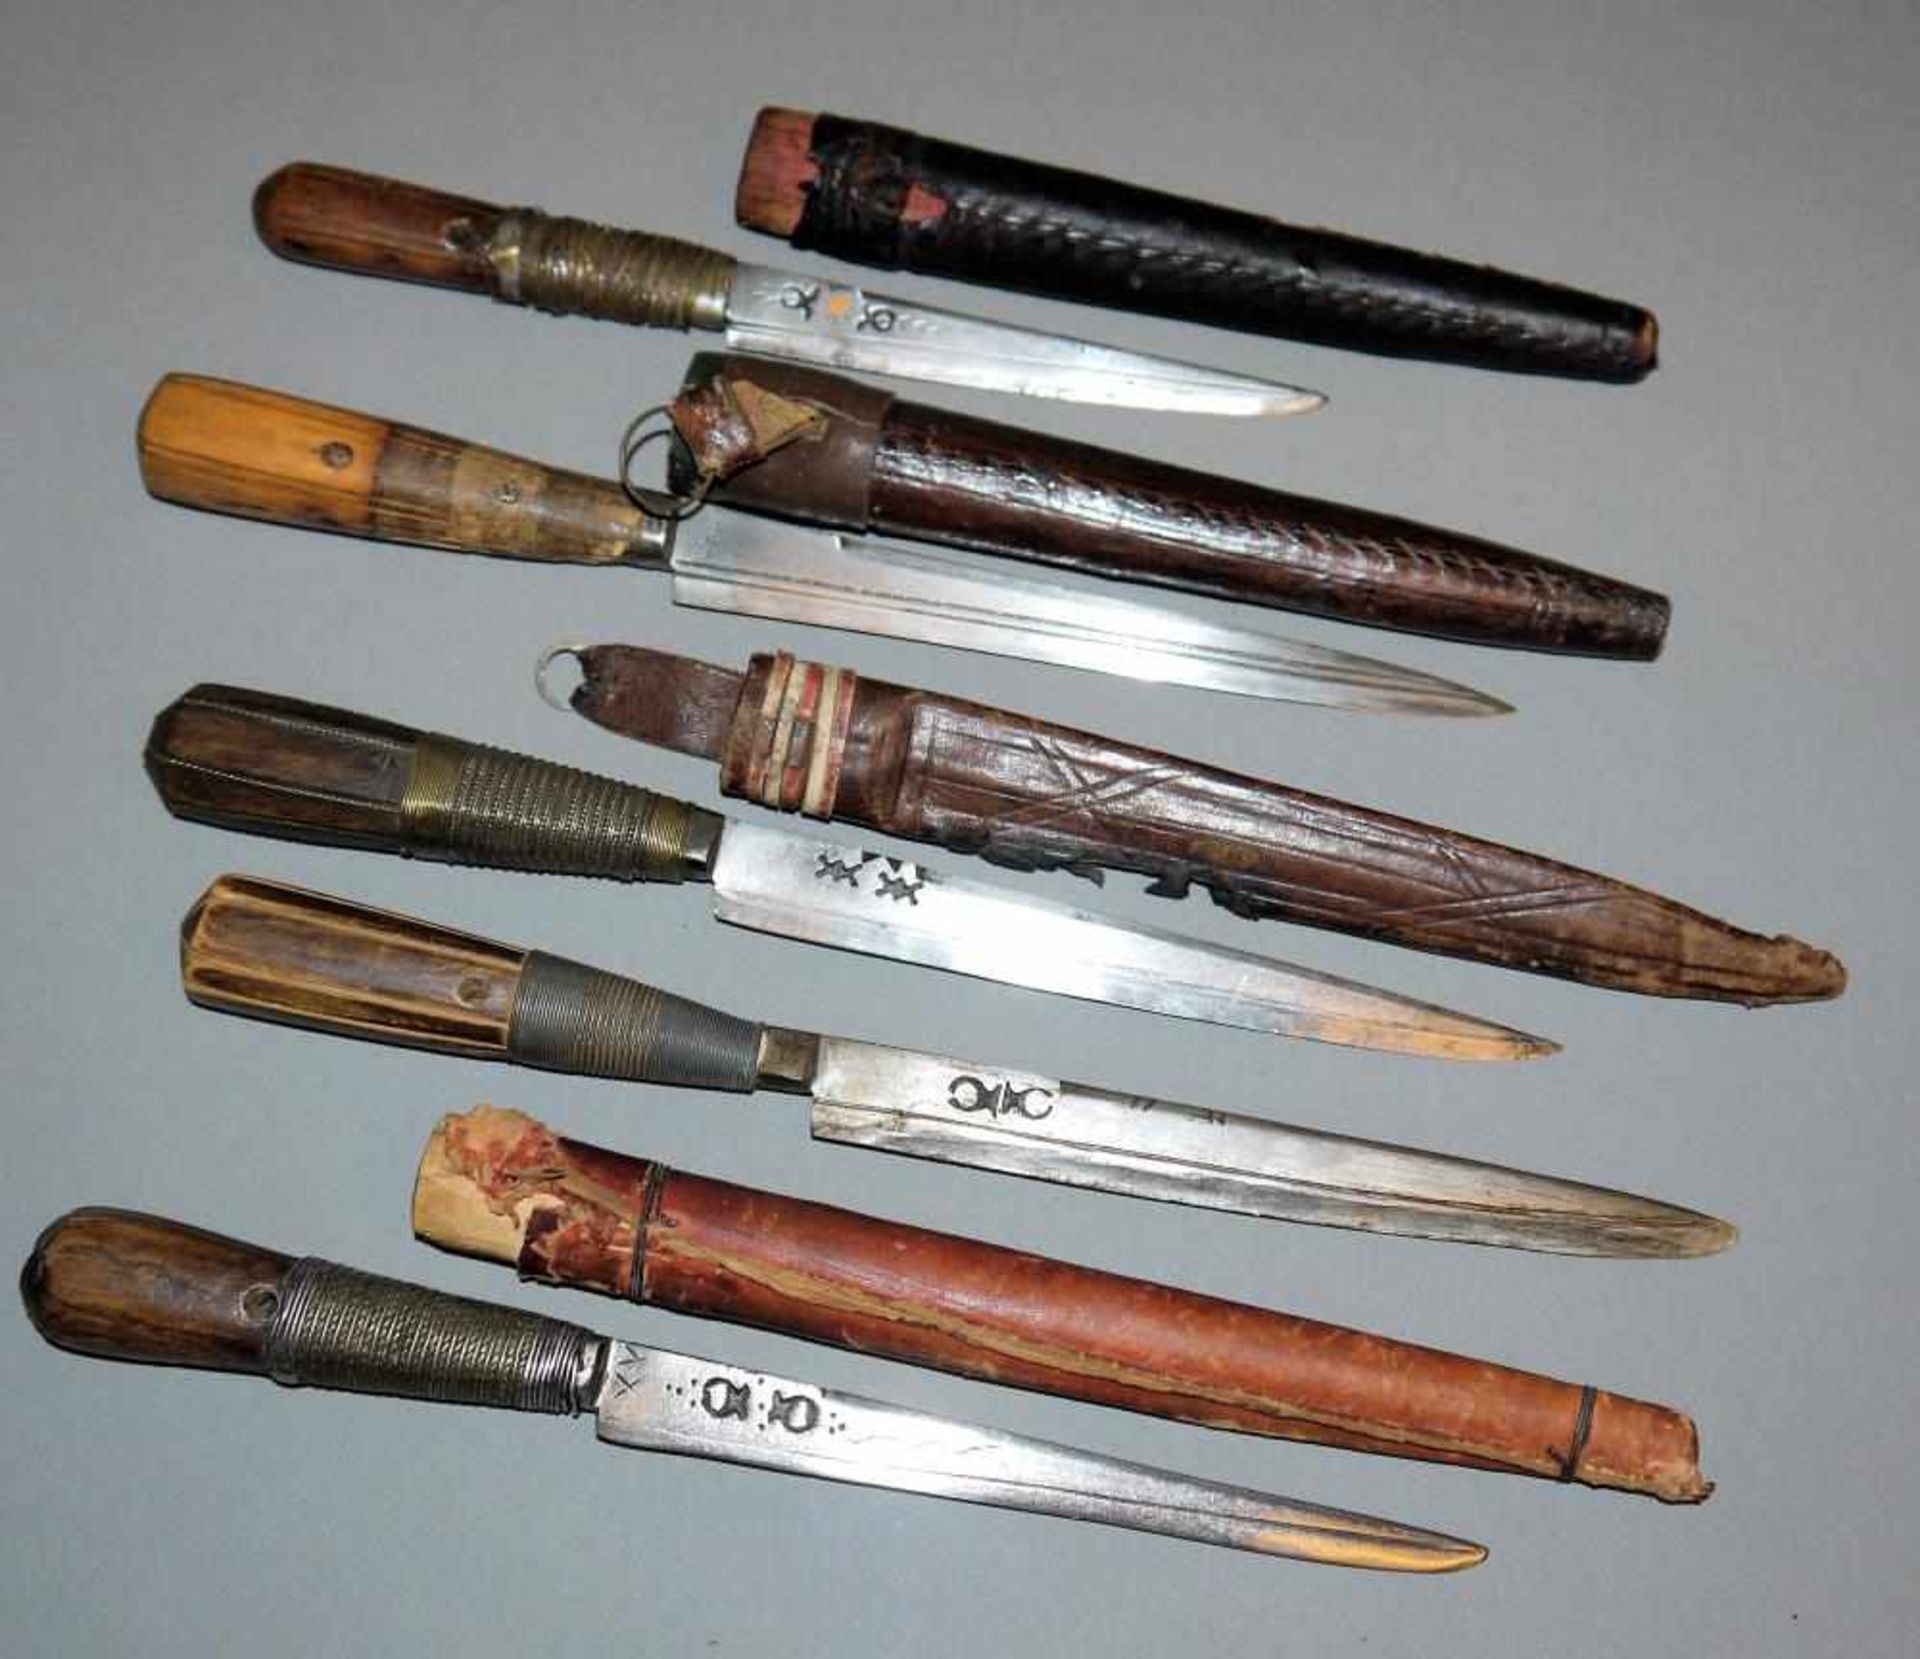 Fünf Khodmi, Gebrauchsmesser der Region Bou Saada, Algerien 20. Jh. Messer mit sorgfältig